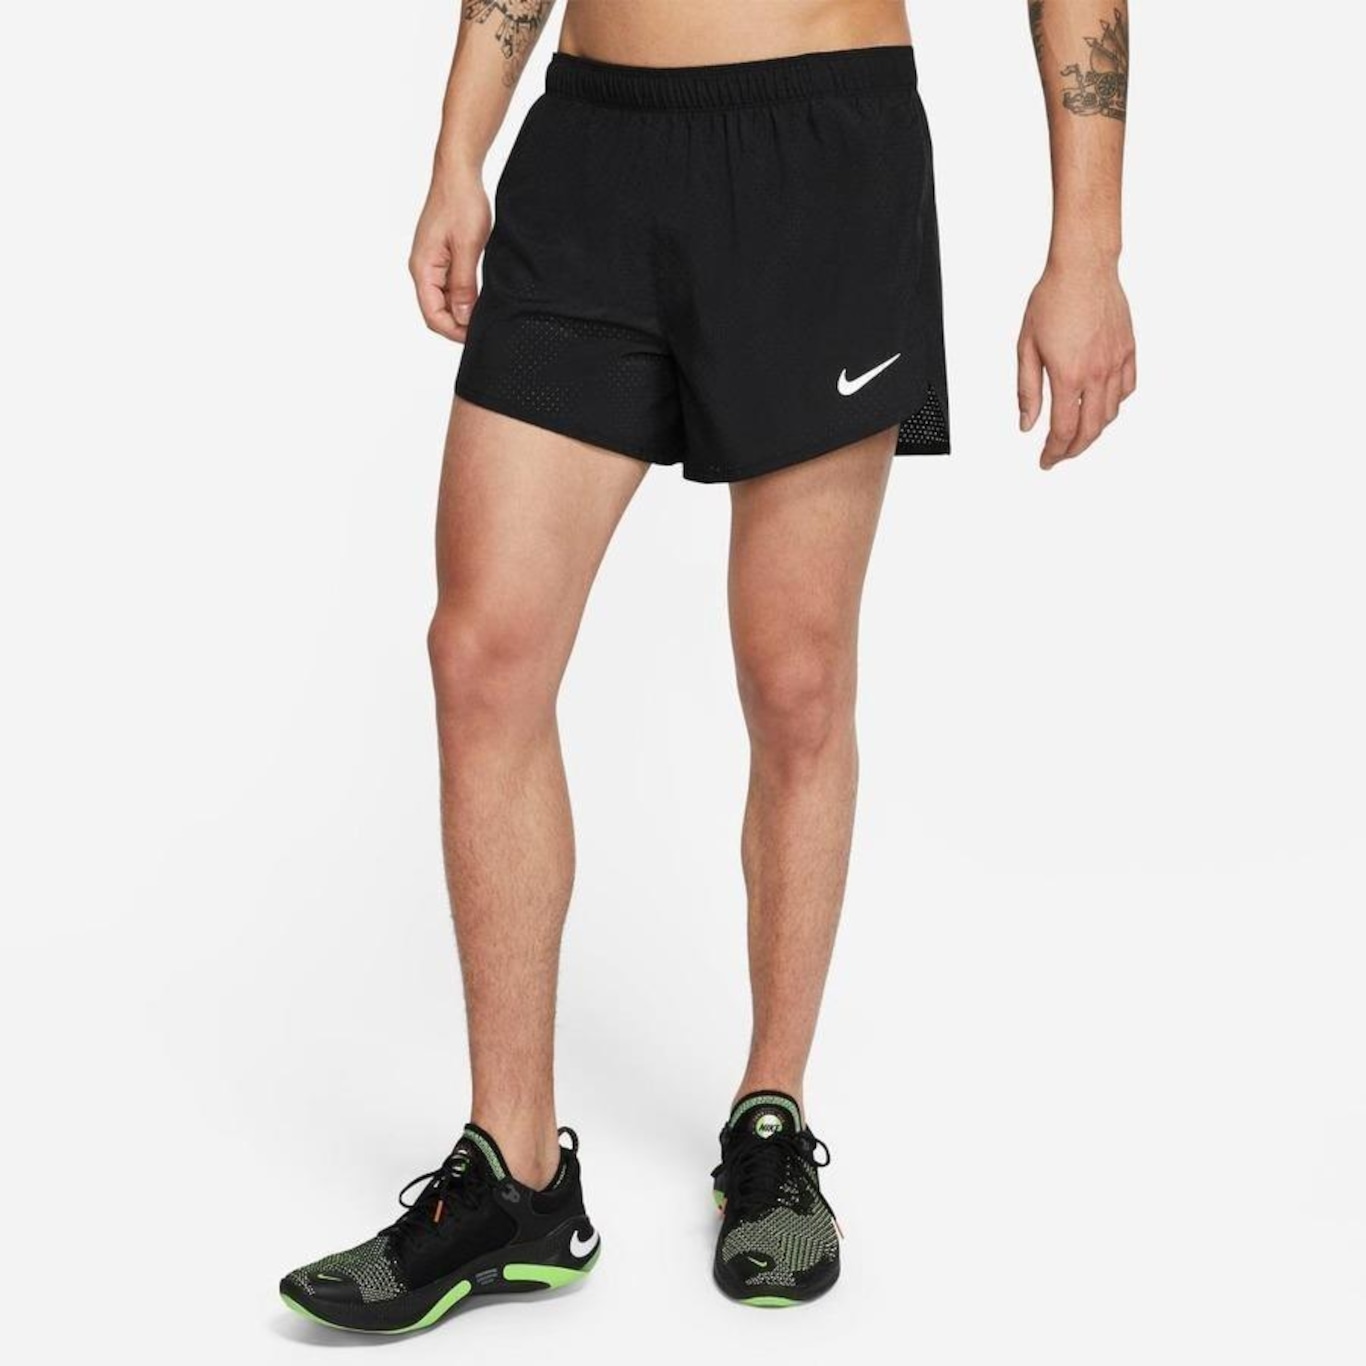 Shorts Nike Team 31 Standard Issue - Masculino em Promoção